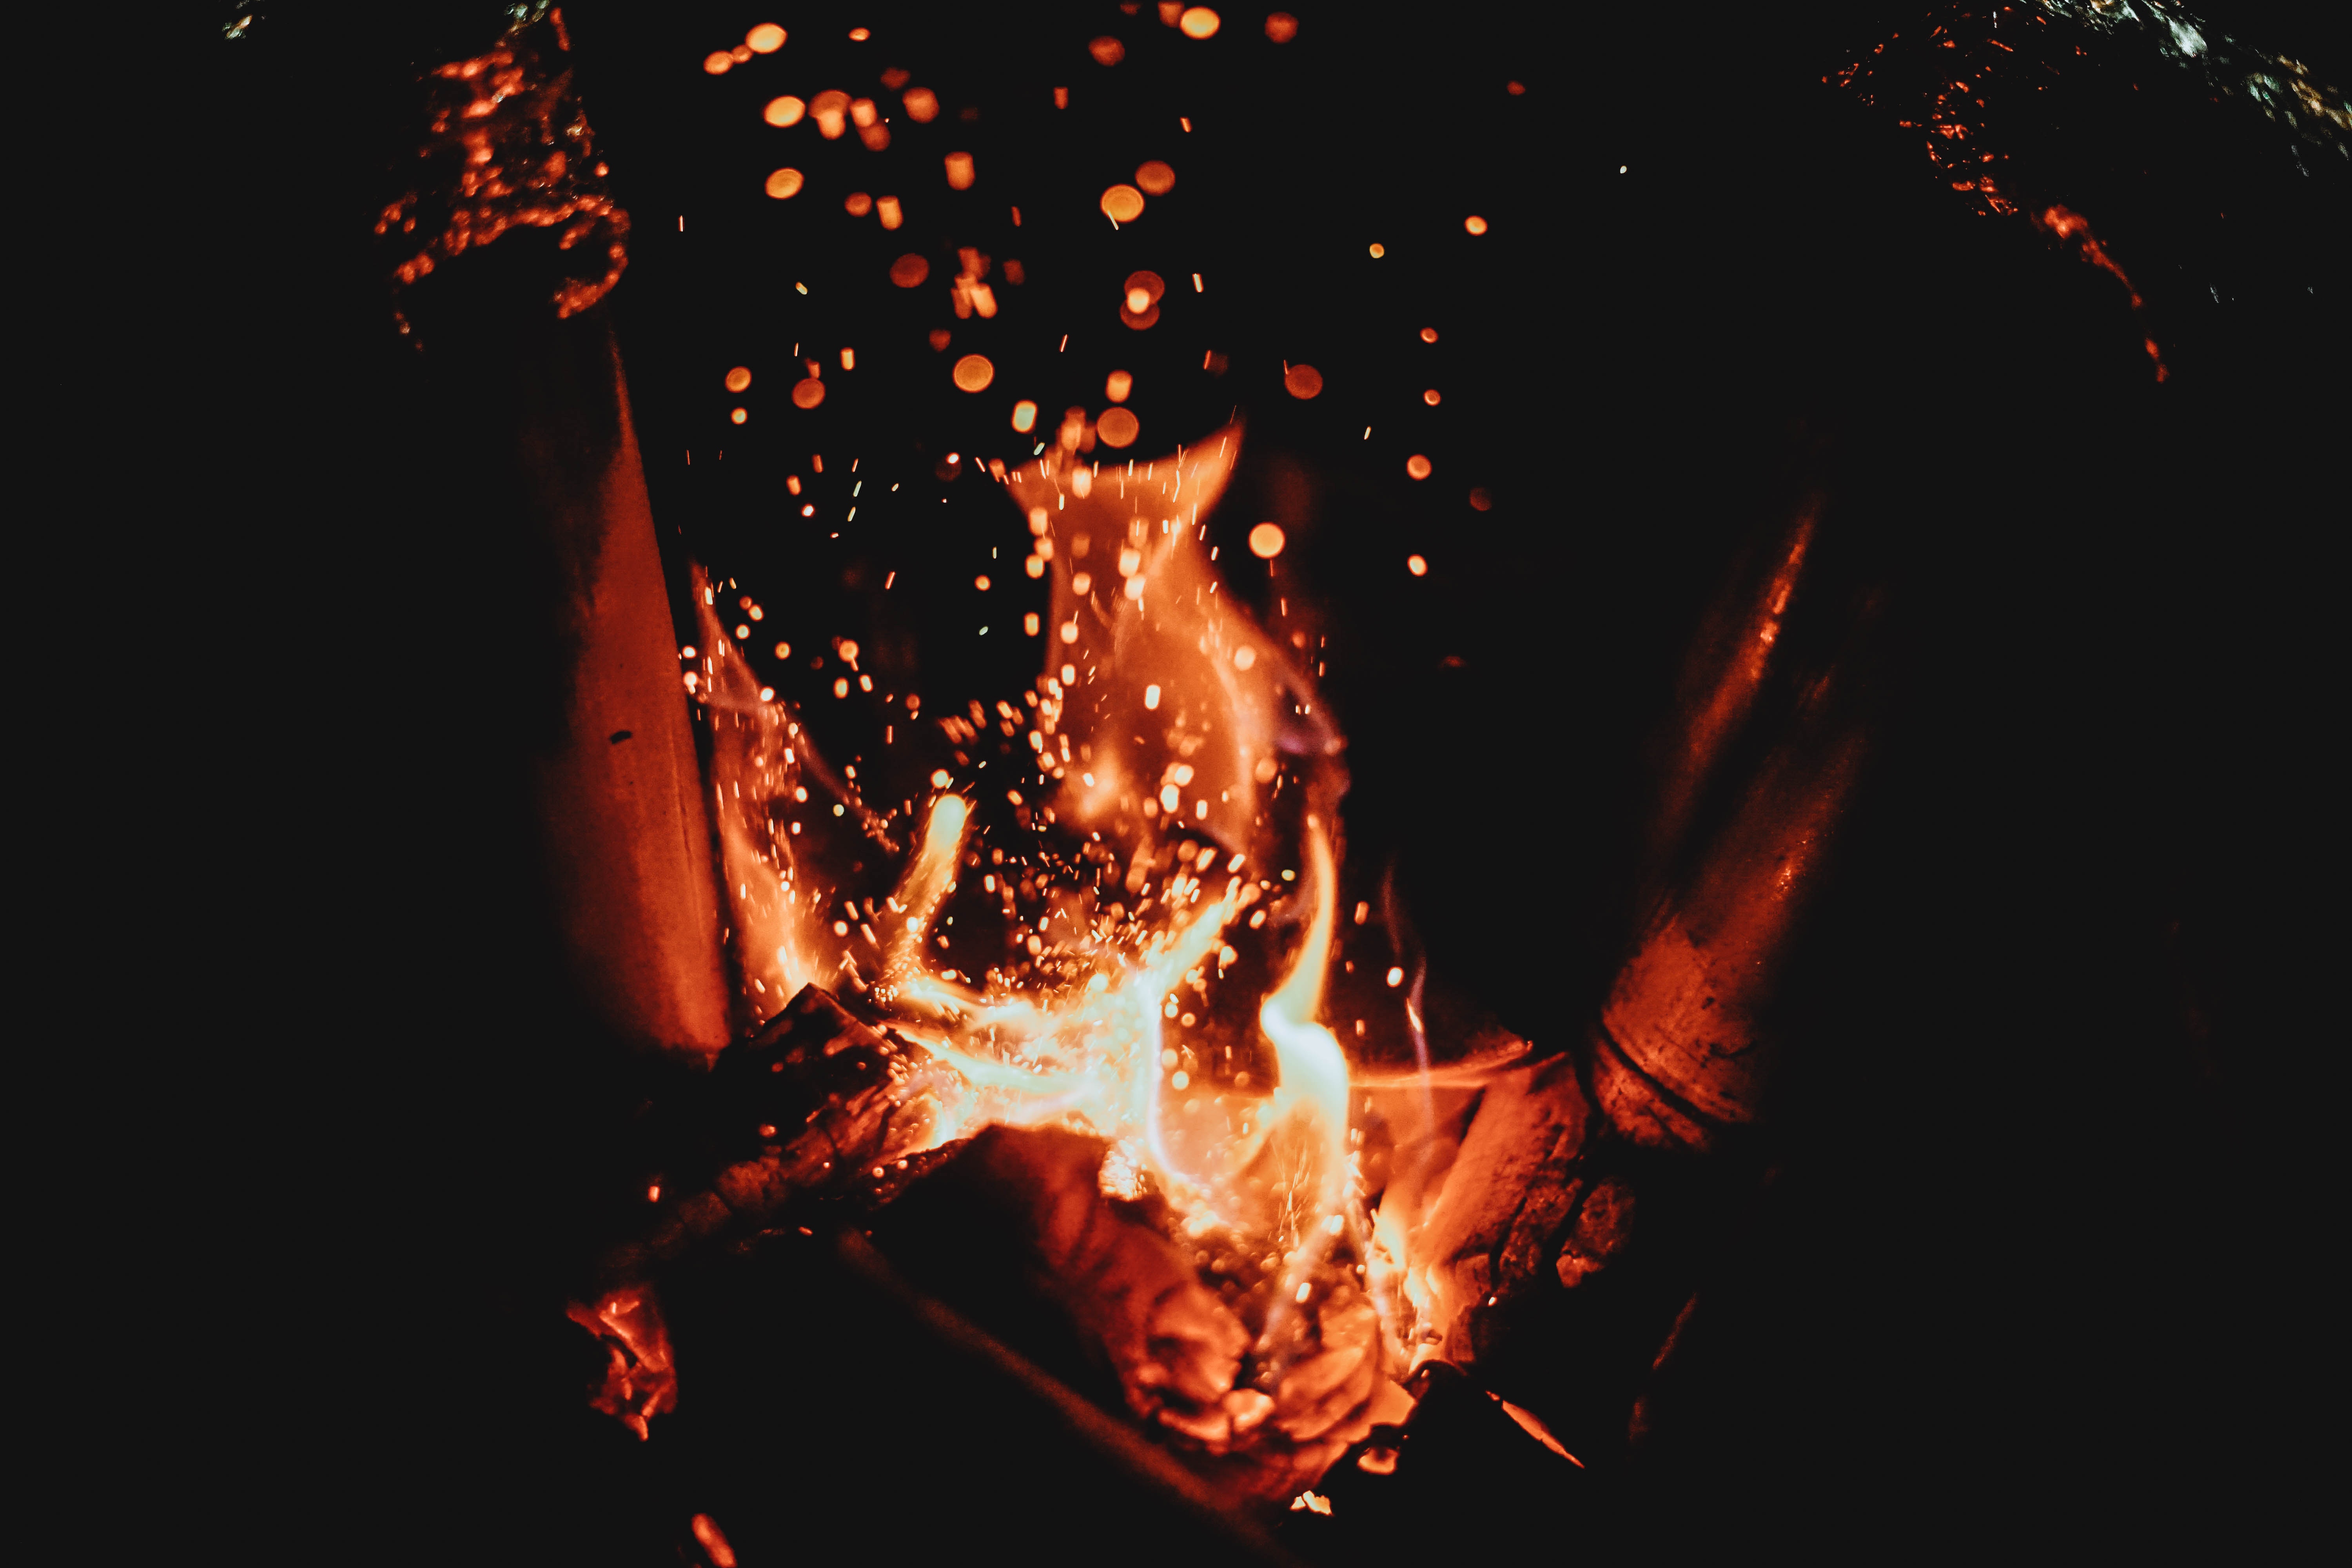 fire, sparks, flame, bonfire, dark images